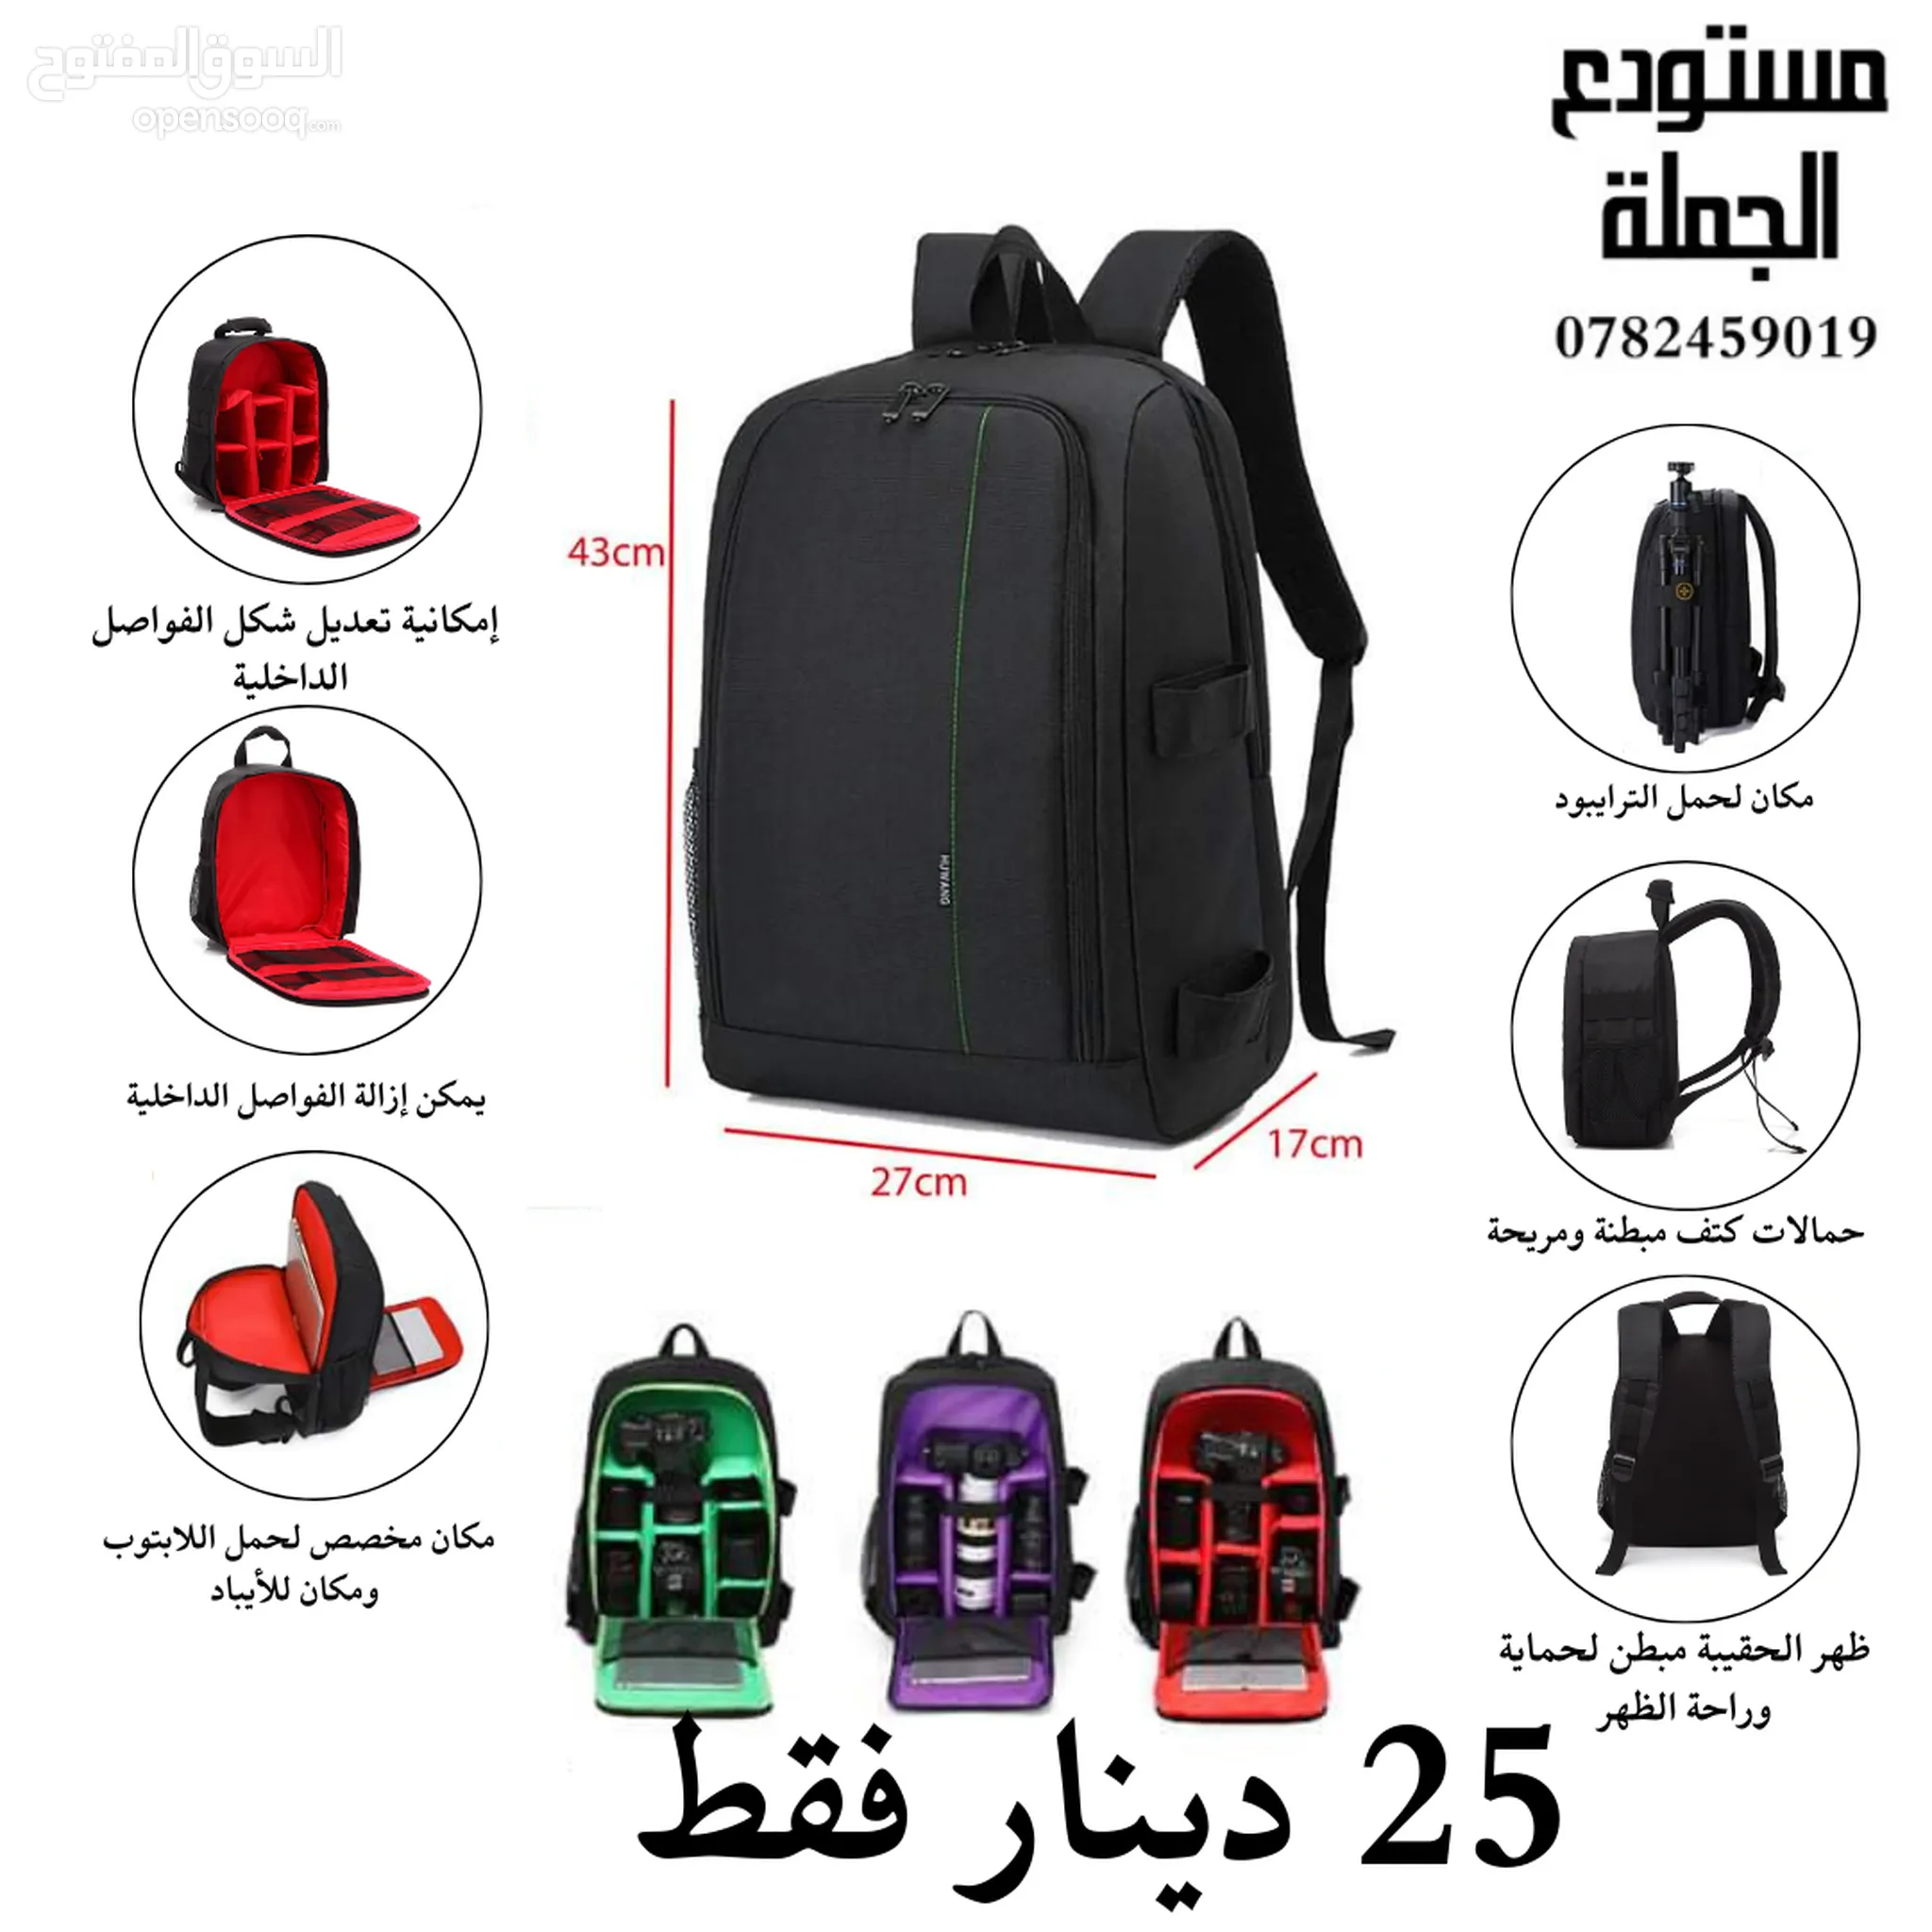 اكسسوارات حقائب كاميرات للبيع في الأردن | السوق المفتوح